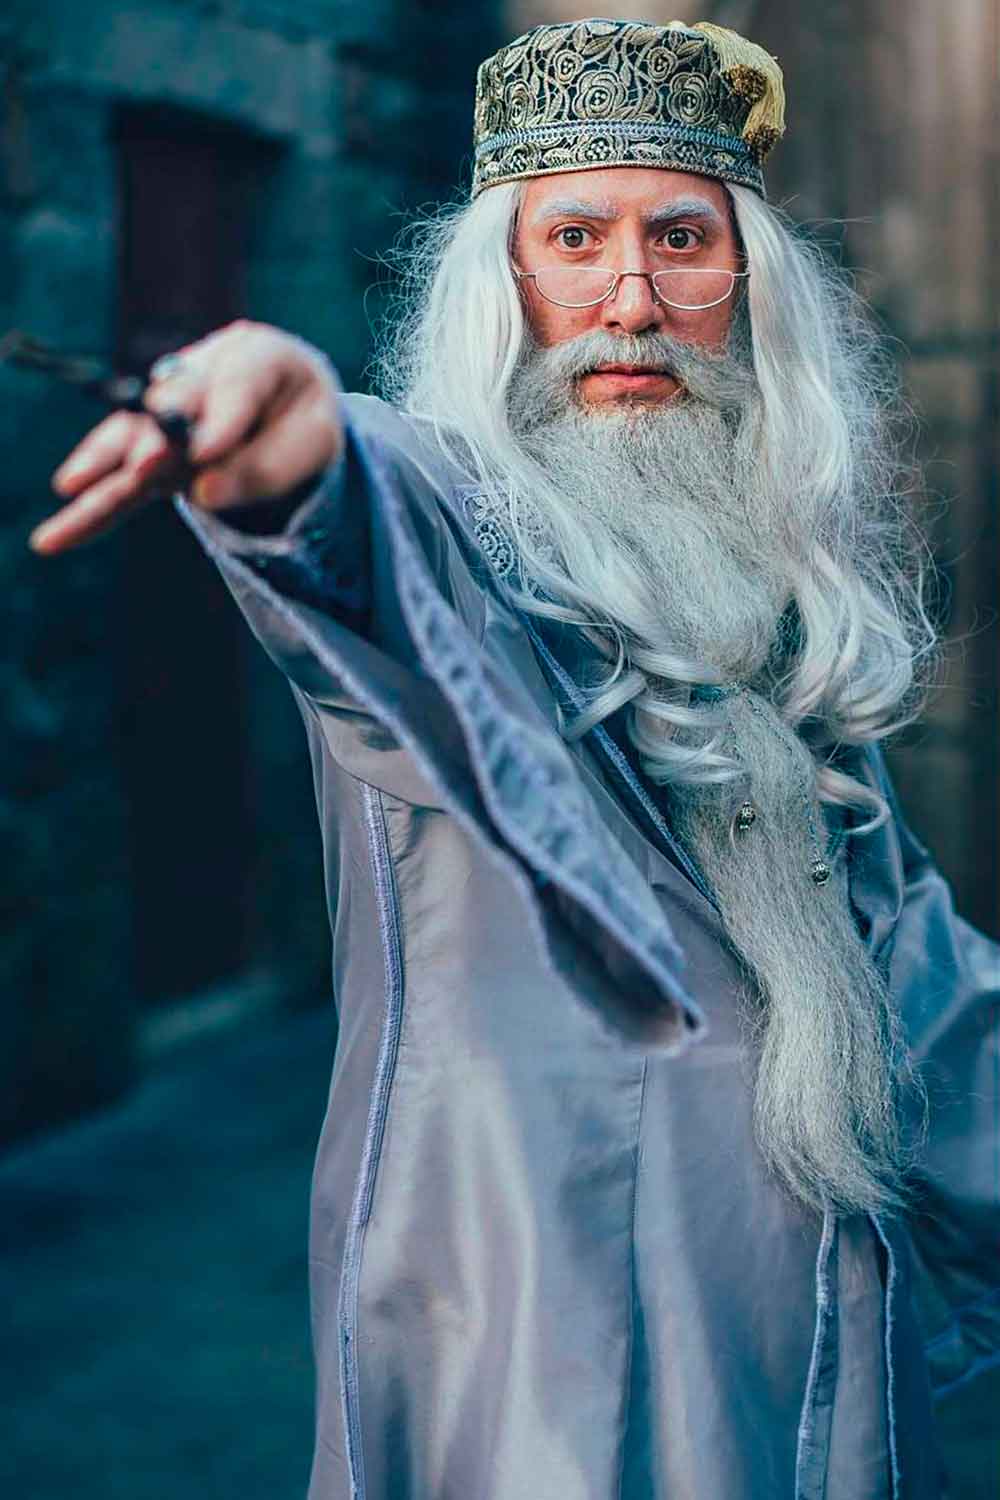 Dumbledore #menshalloweencostumes #haloweencostumeideasmen #halloweencostumes